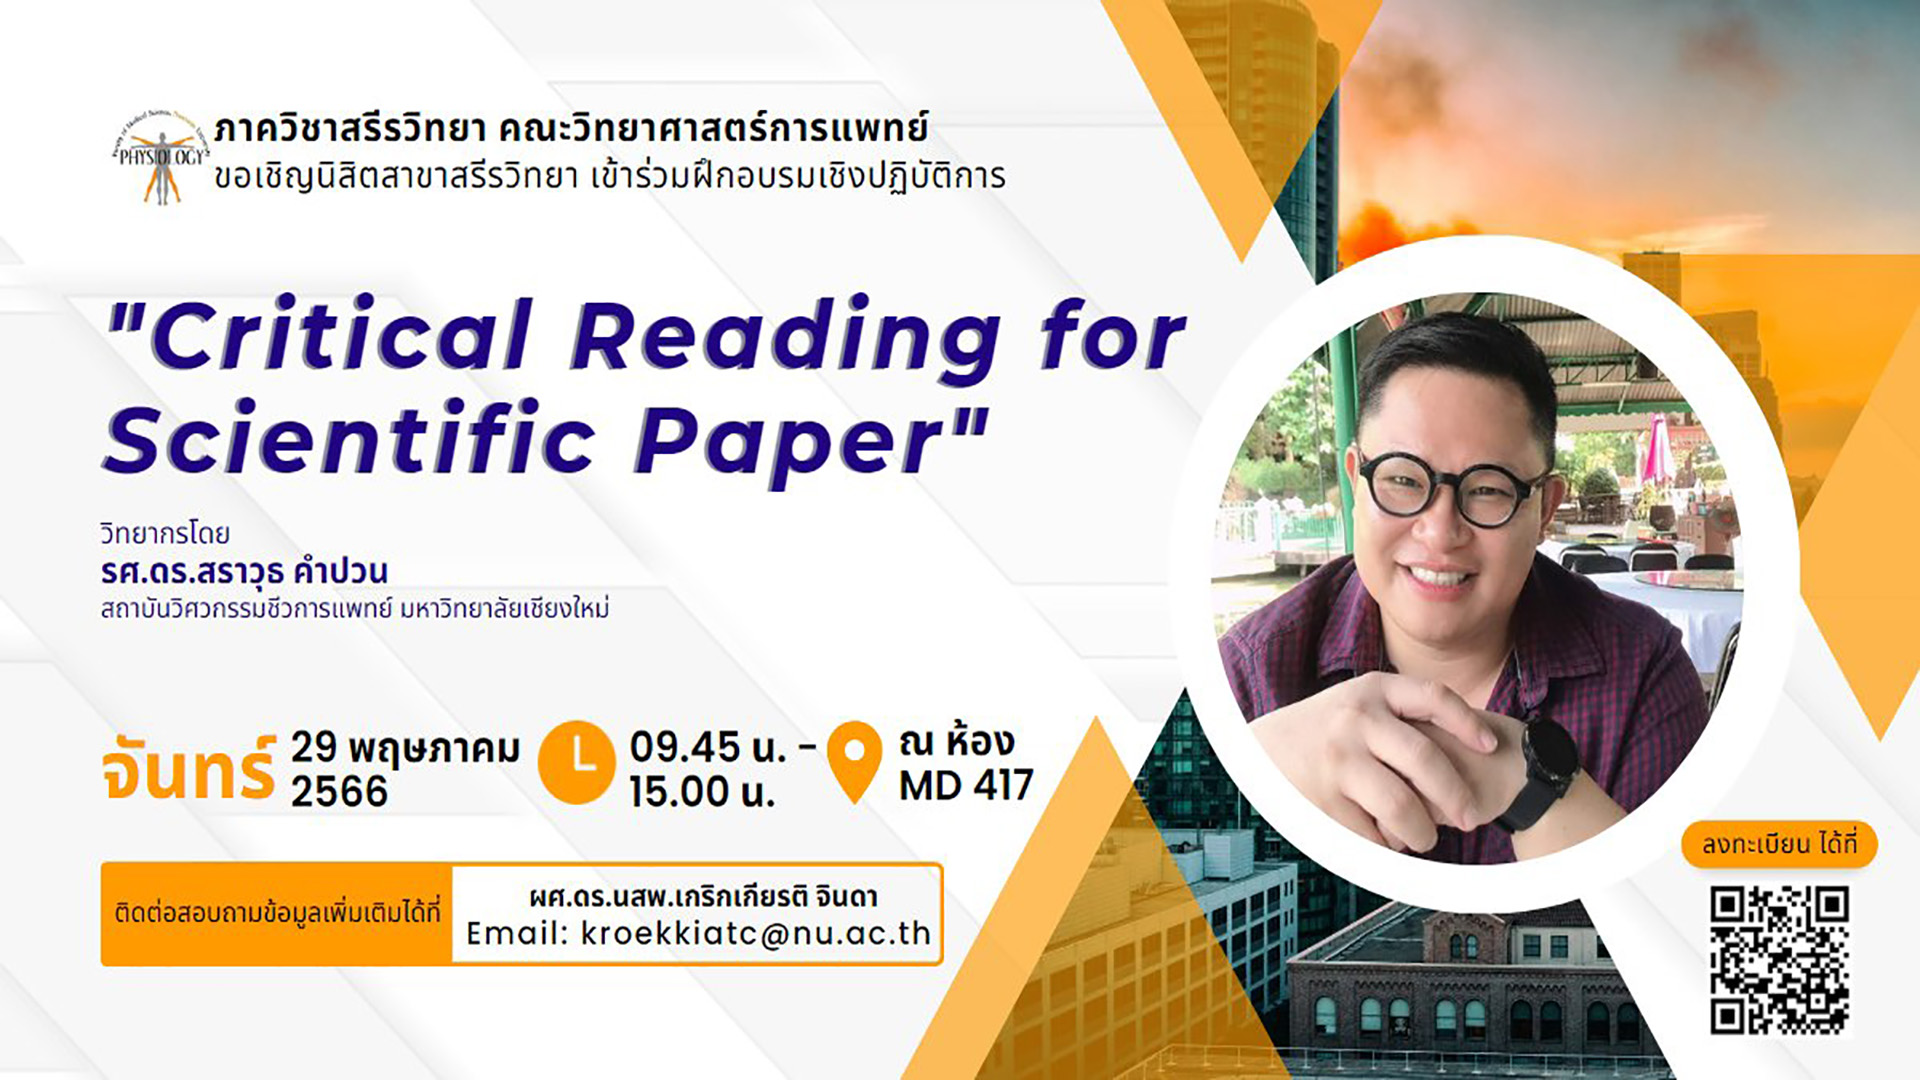 ขอเชิญชวนผู้ที่สนใจเข้าร่วมโครงการสุดปัง “Critical Reading for Scientific Paper”